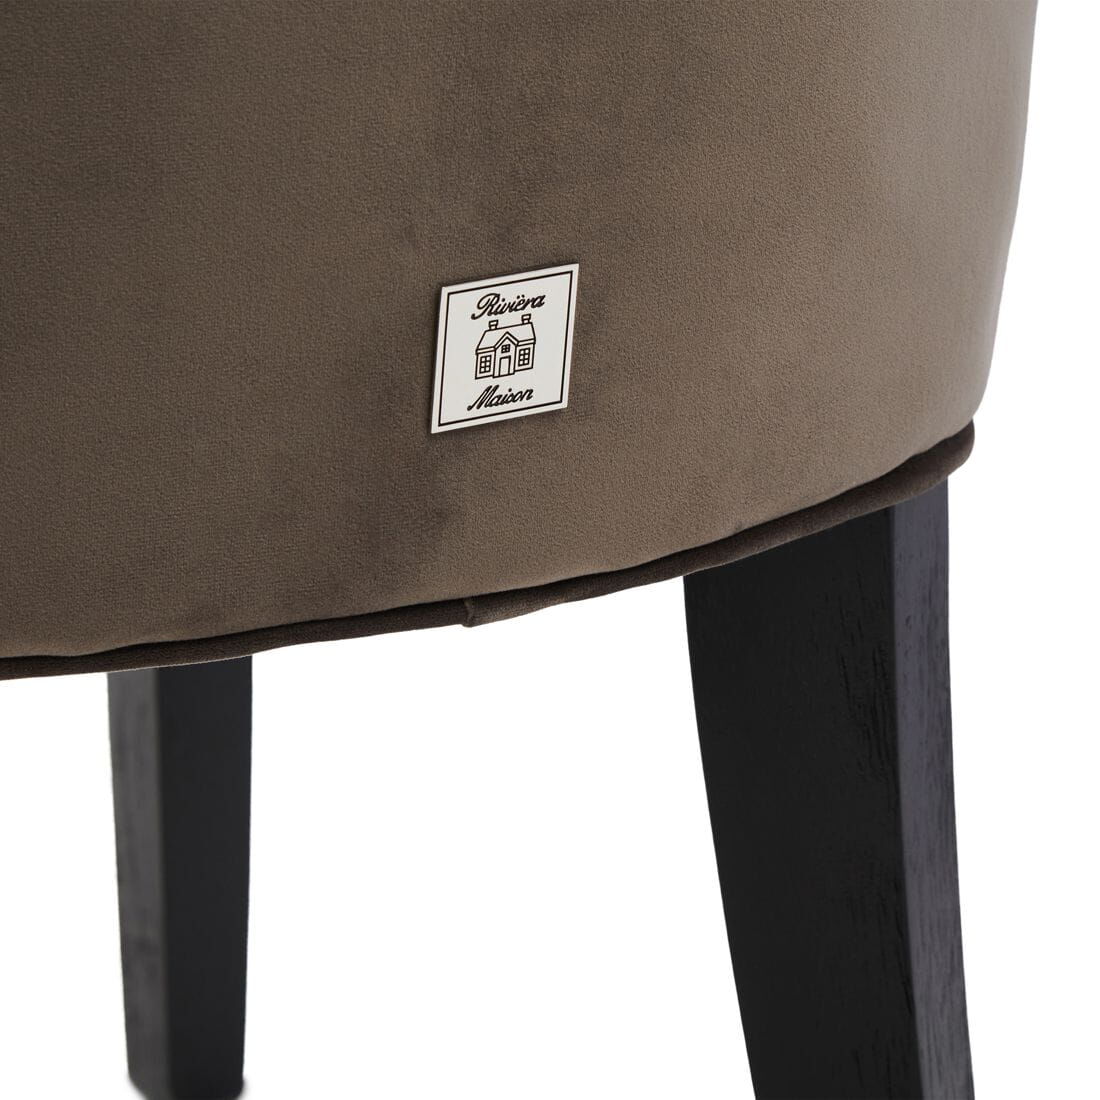 Krzesło do jadalni Balmoral 55x67x99cm velvet III anthracite